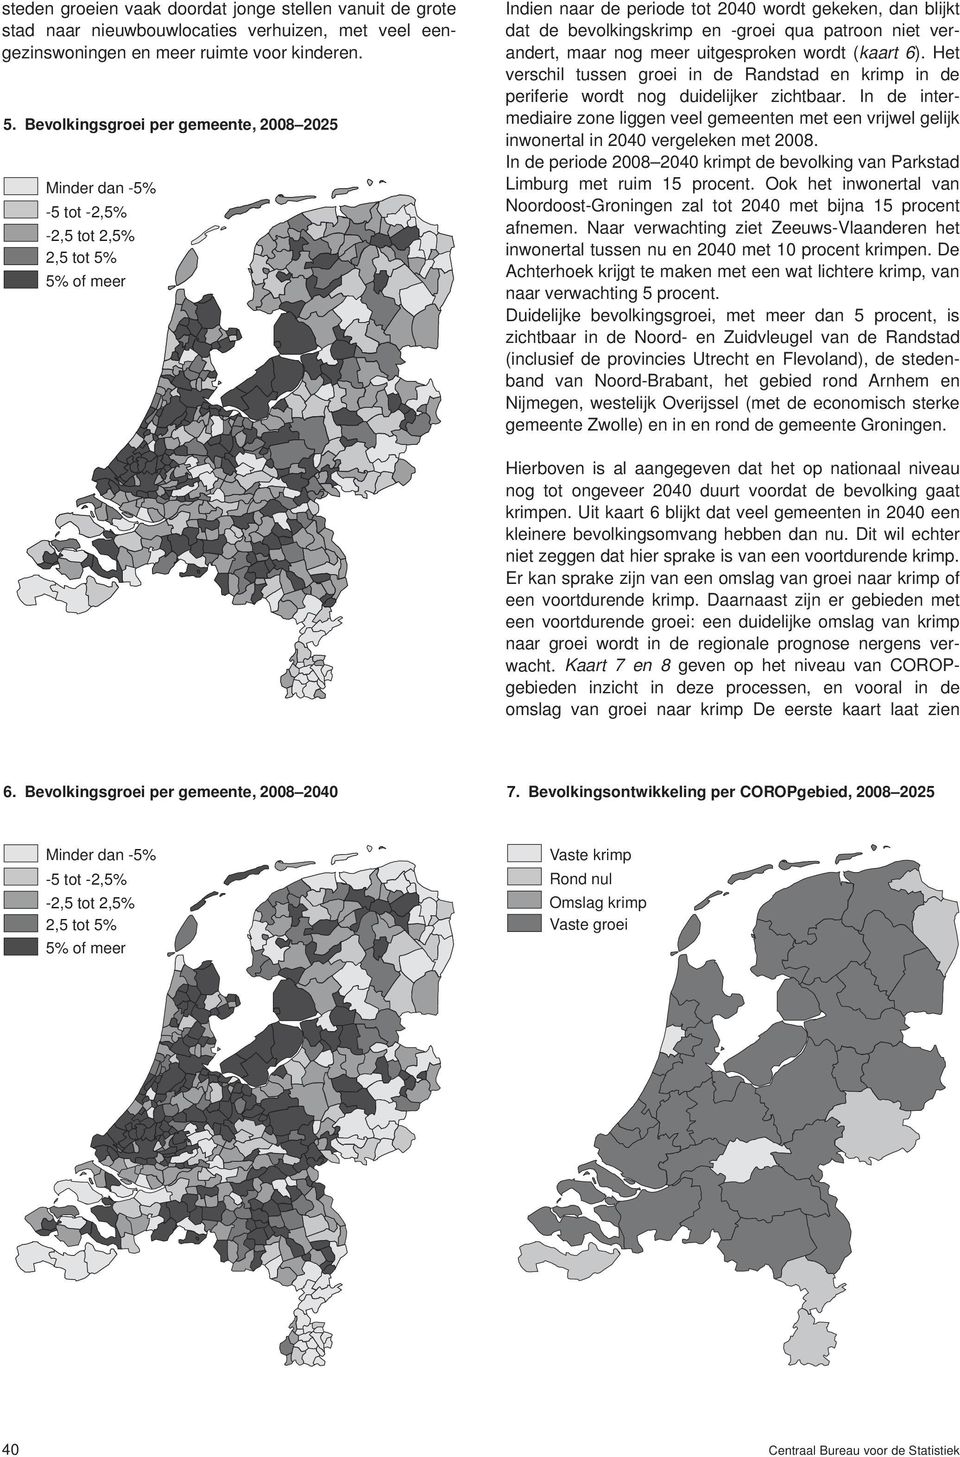 verandert, maar nog meer uitgesproken wordt (kaart 6). Het verschil tussen groei in de Randstad en krimp in de periferie wordt nog duidelijker zichtbaar.